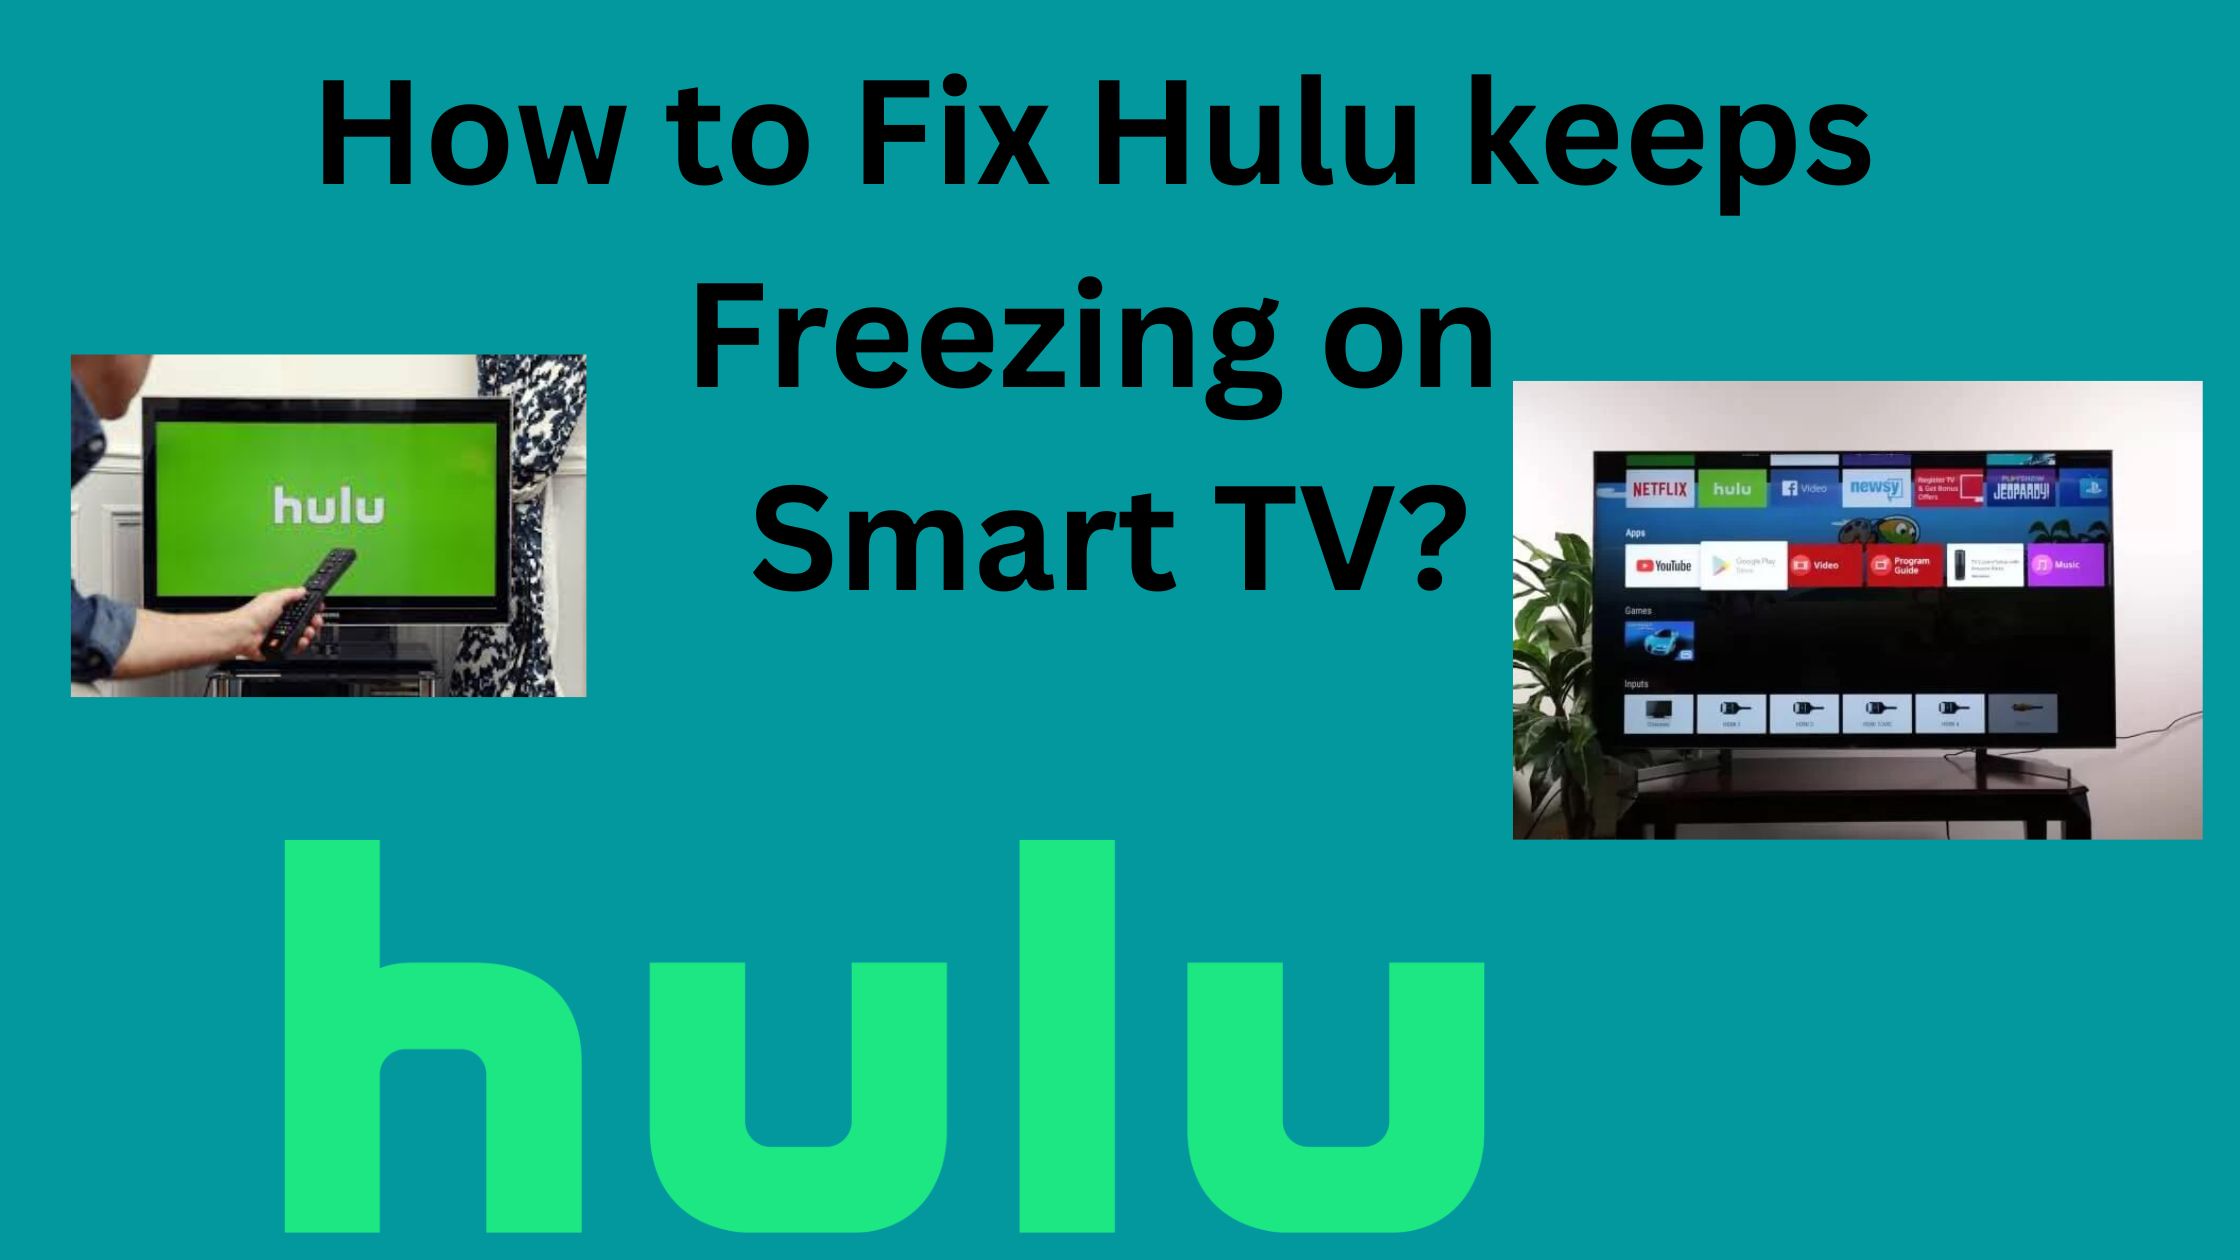 How to Fix Hulu Keeps Freezing on Smart TV